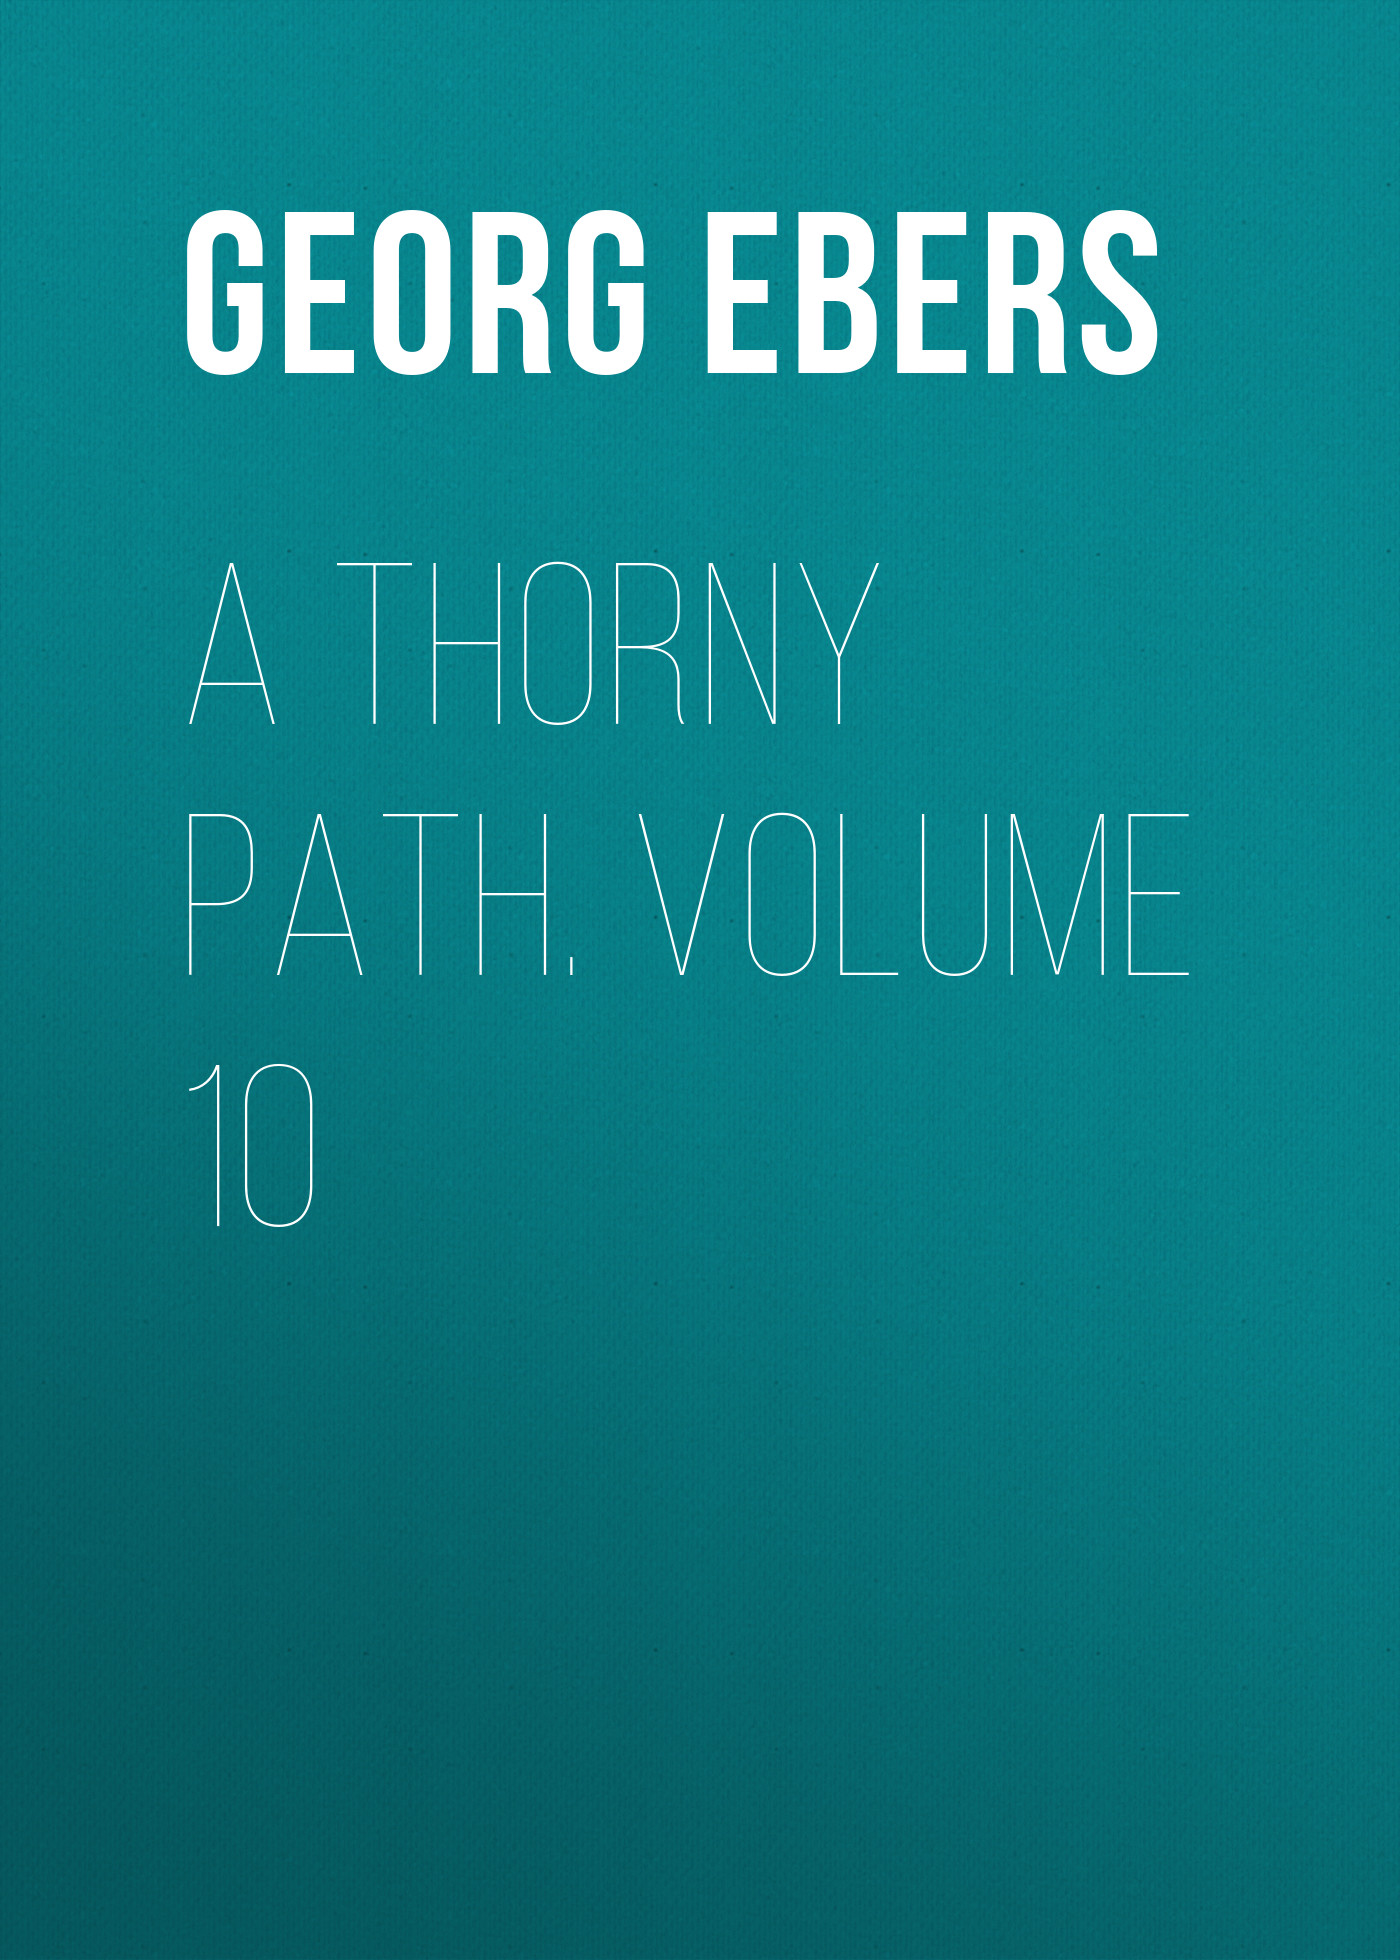 Книга A Thorny Path. Volume 10 из серии , созданная Georg Ebers, может относится к жанру Зарубежная классика, Зарубежная старинная литература. Стоимость электронной книги A Thorny Path. Volume 10 с идентификатором 42628123 составляет 0 руб.